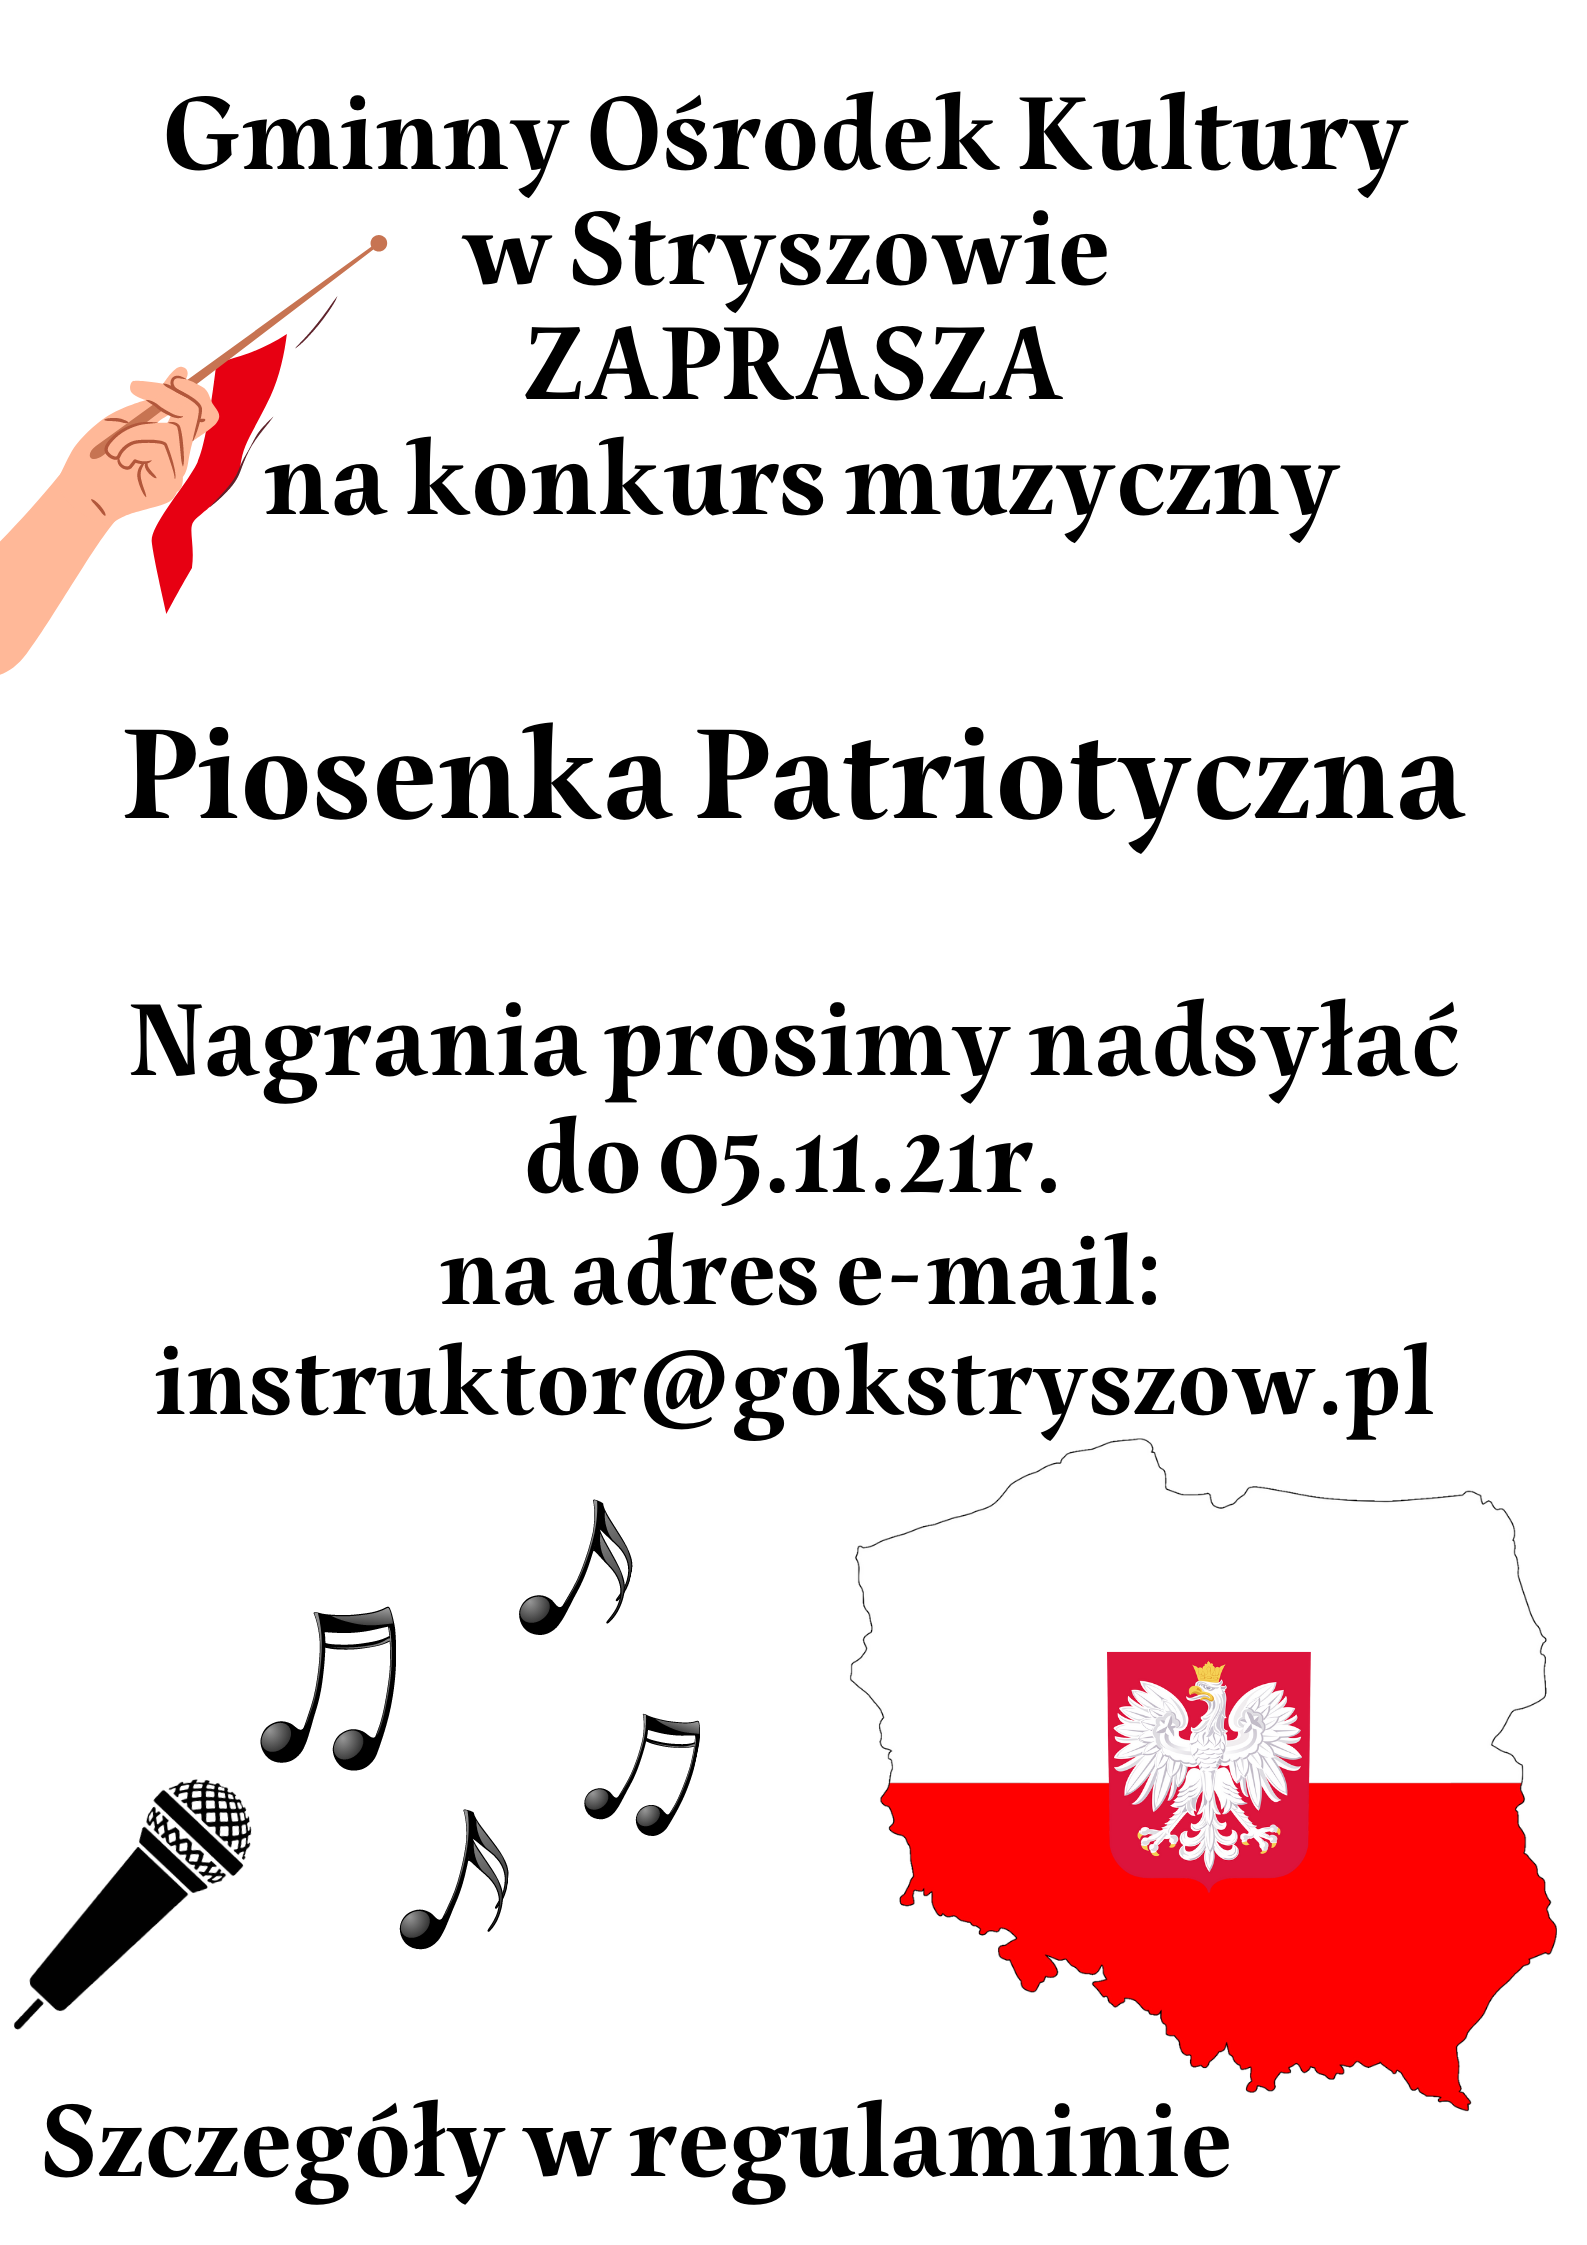 Plakat informujący o konkursie piosenki patryiotycznej